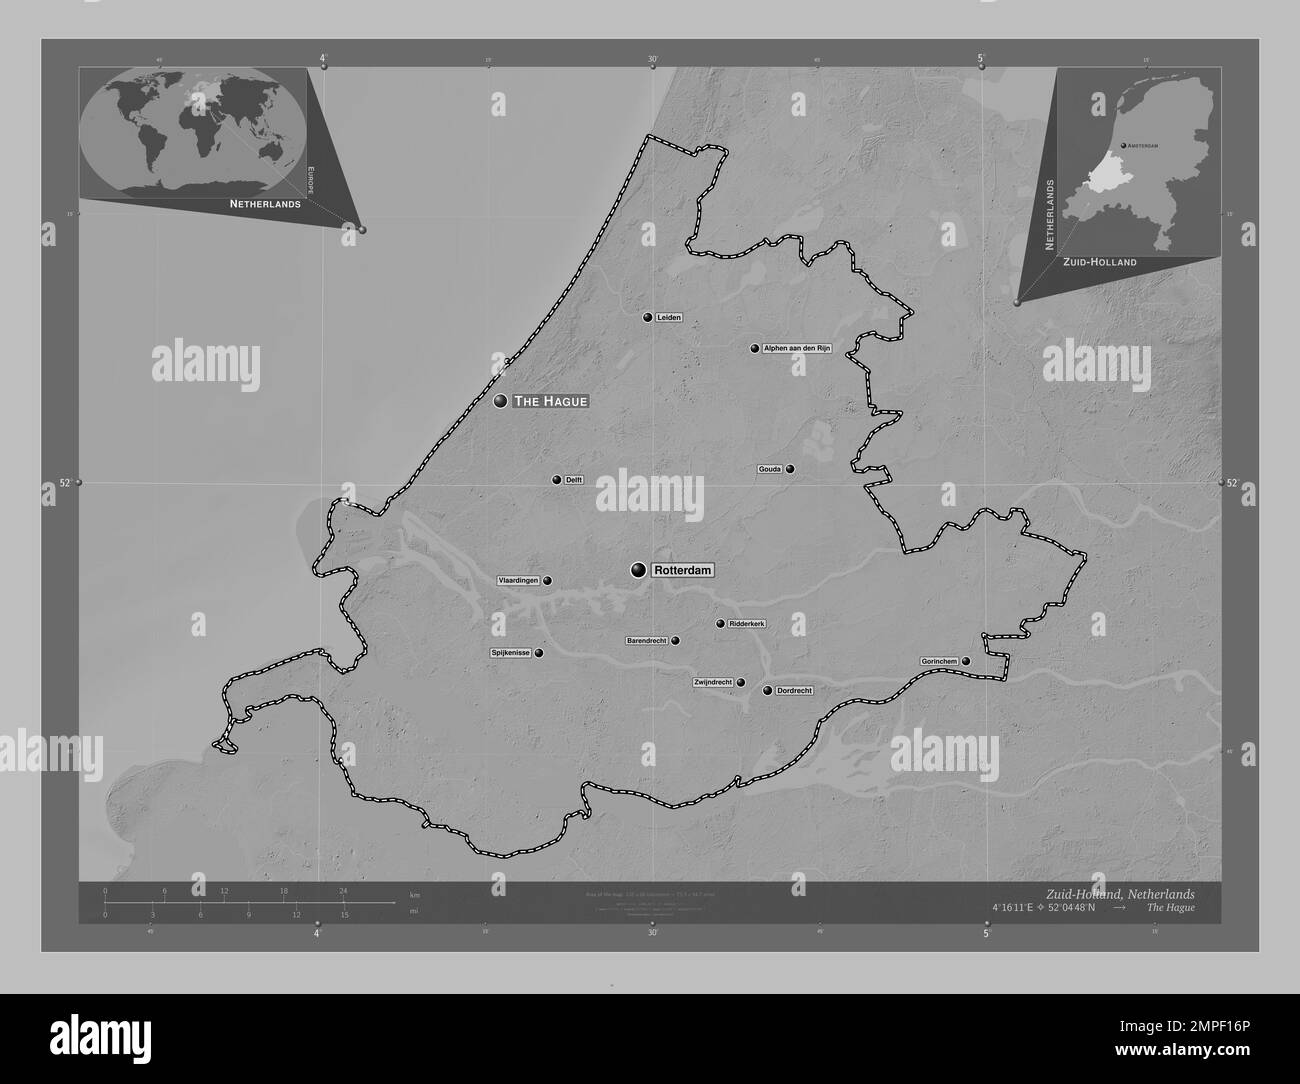 Zuid-Holland, niederländische Provinz. Grauskala-Höhenkarte mit Seen und Flüssen. Standorte und Namen der wichtigsten Städte der Region. Ecke autokorr Stockfoto